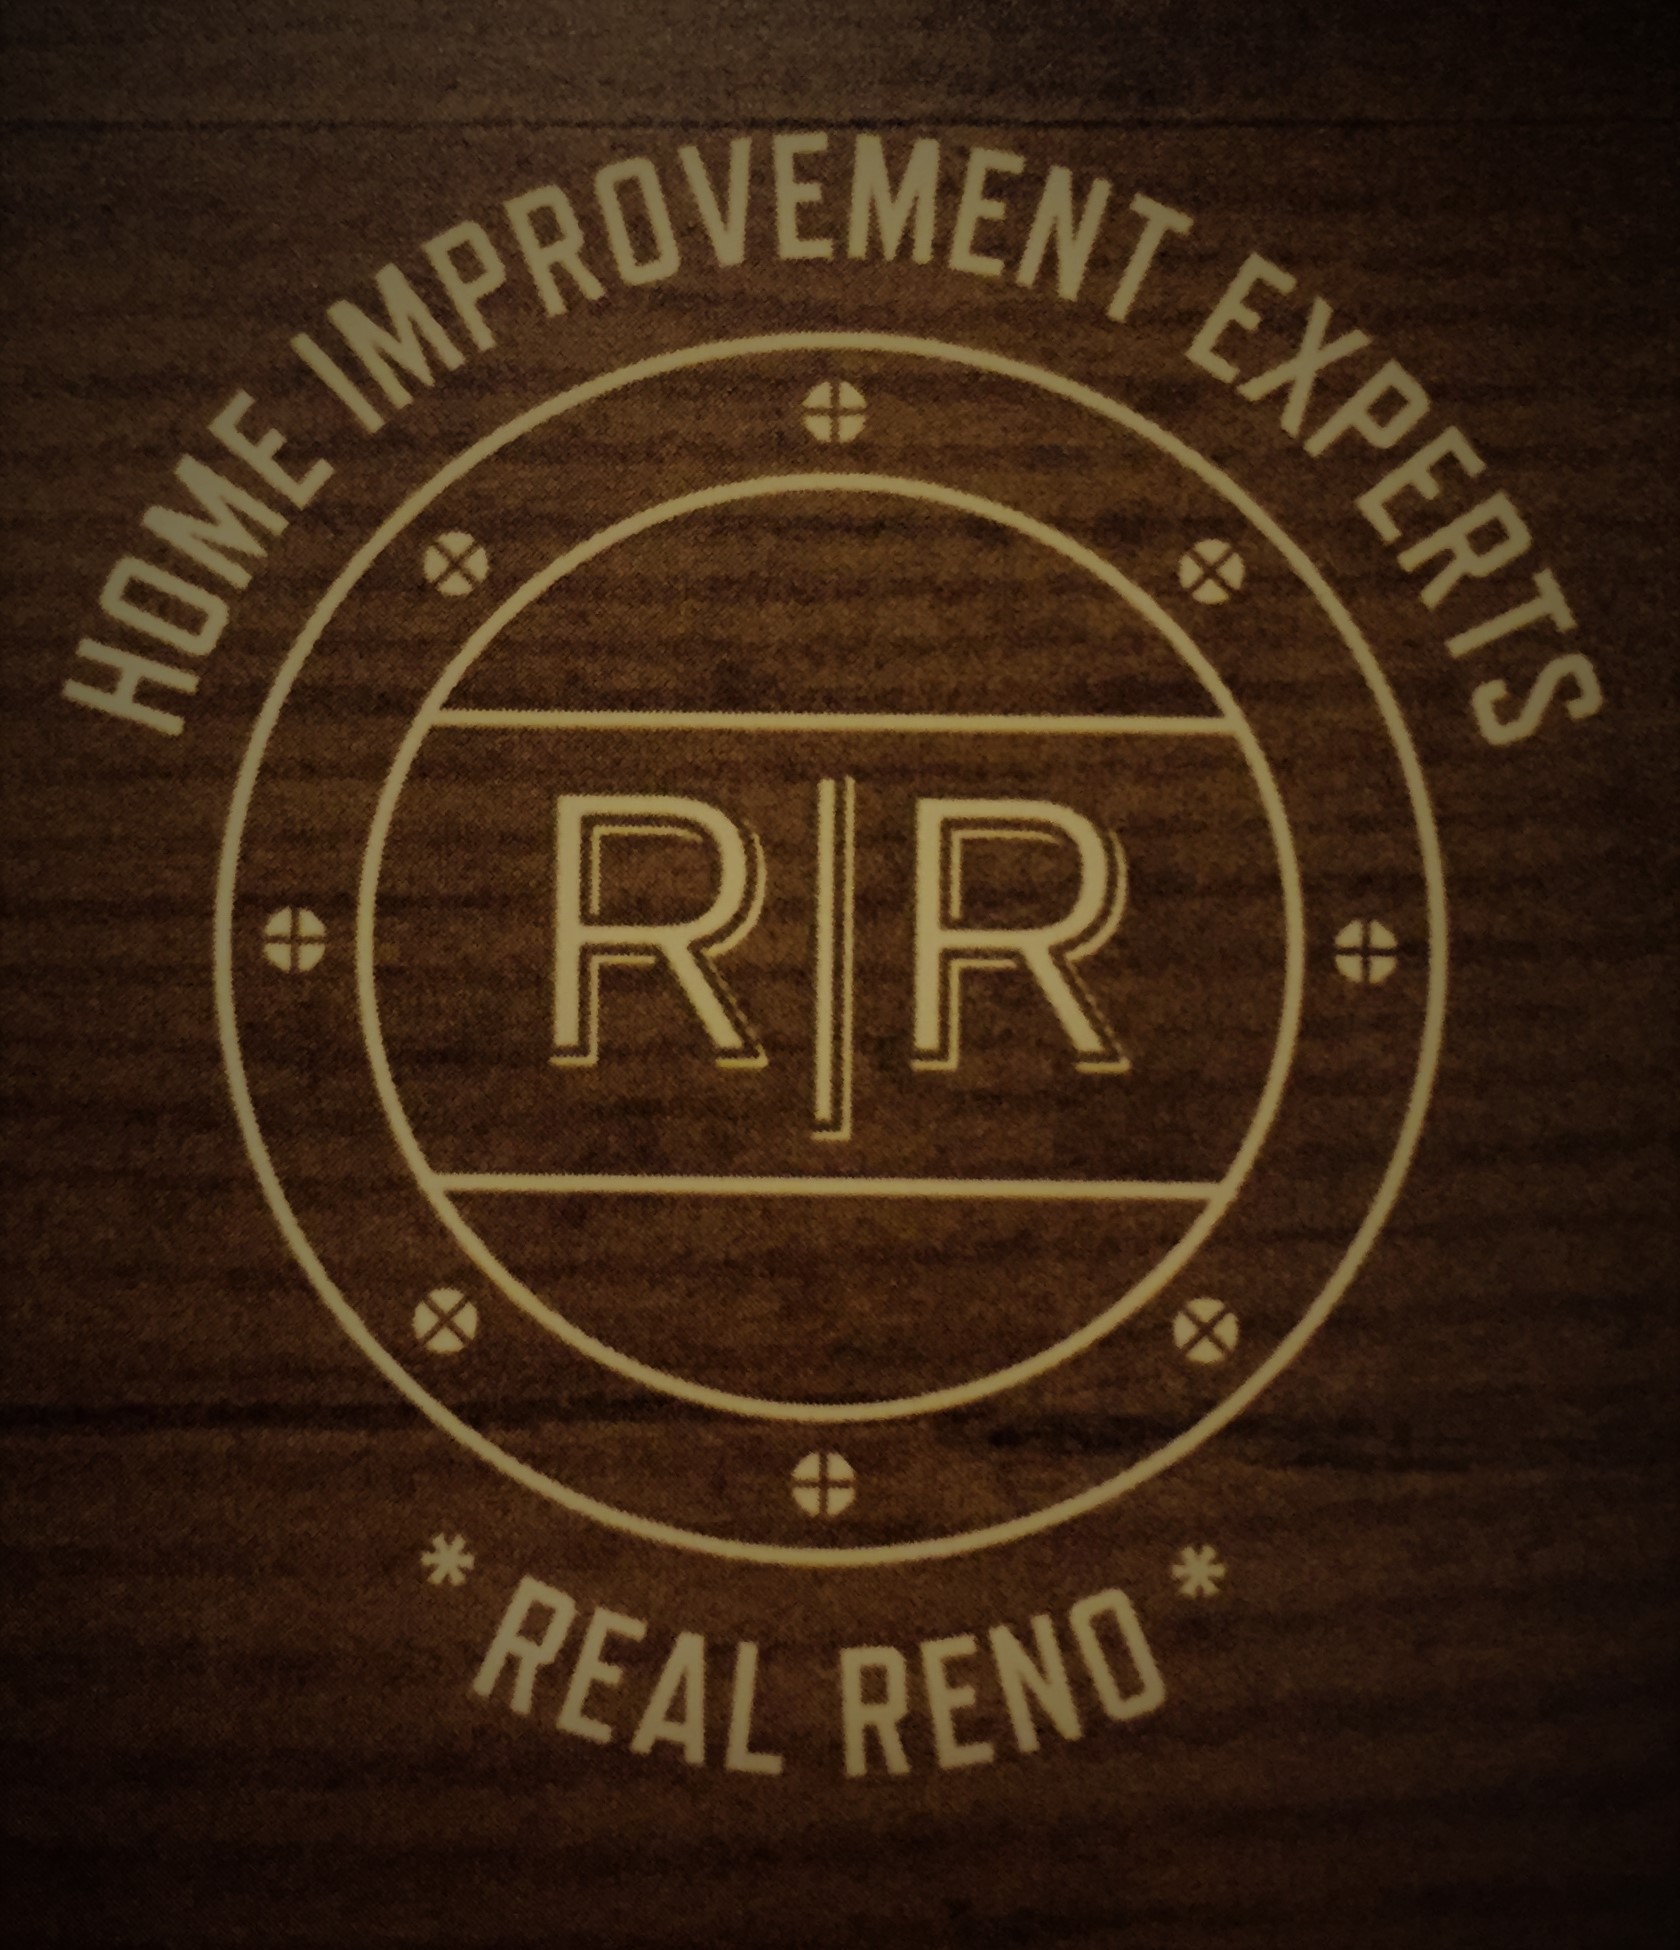 Real Reno Inc.'s logo